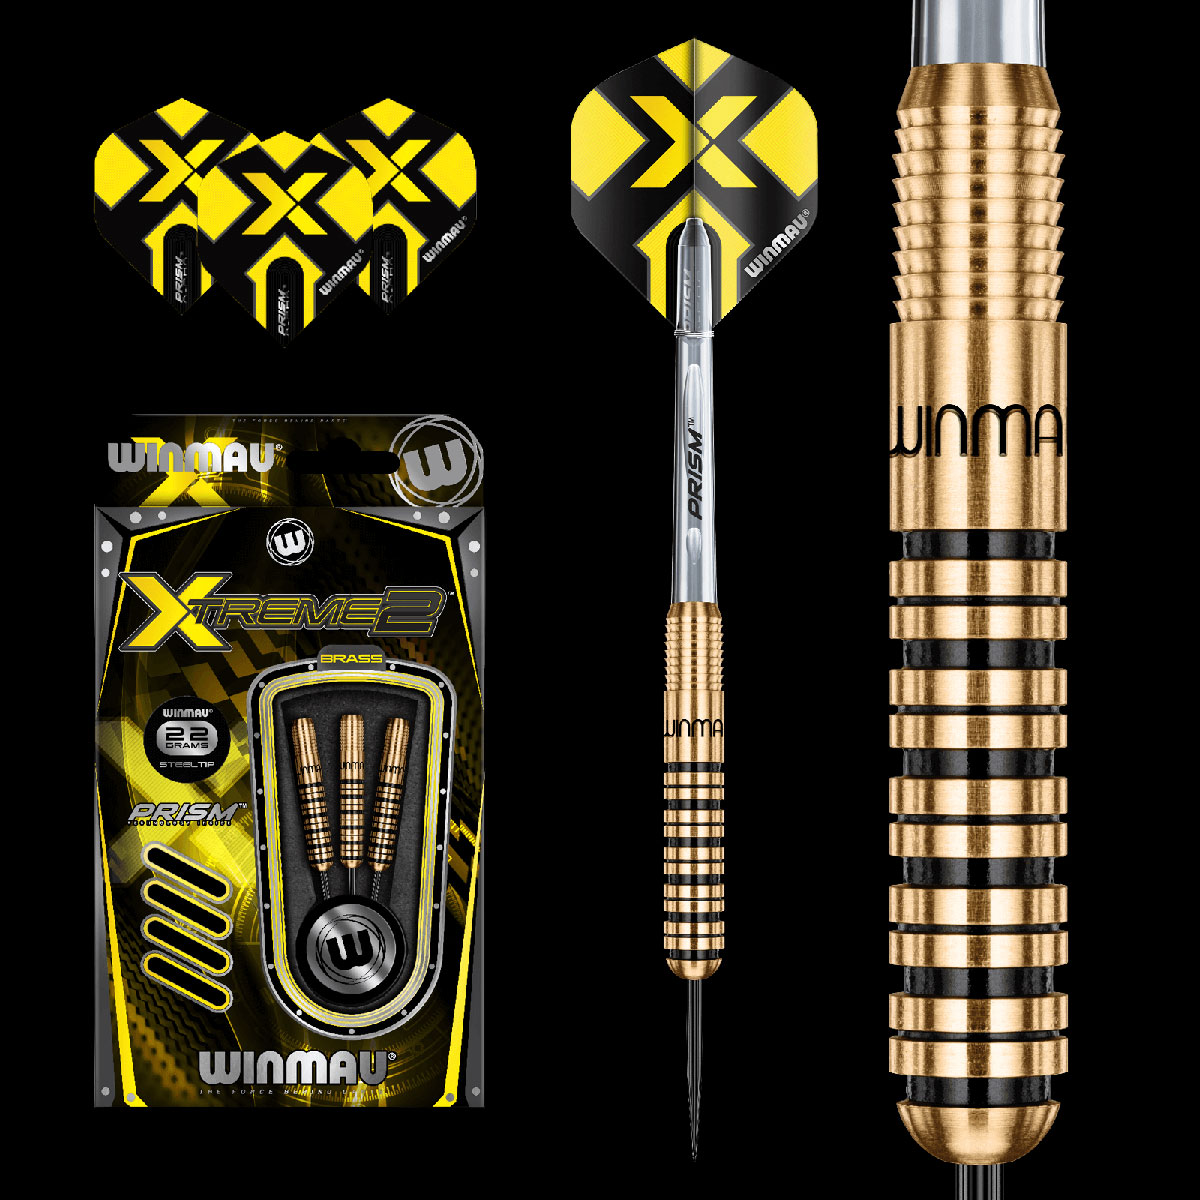 Winmau Xtreme 2 Brass Darts 22g